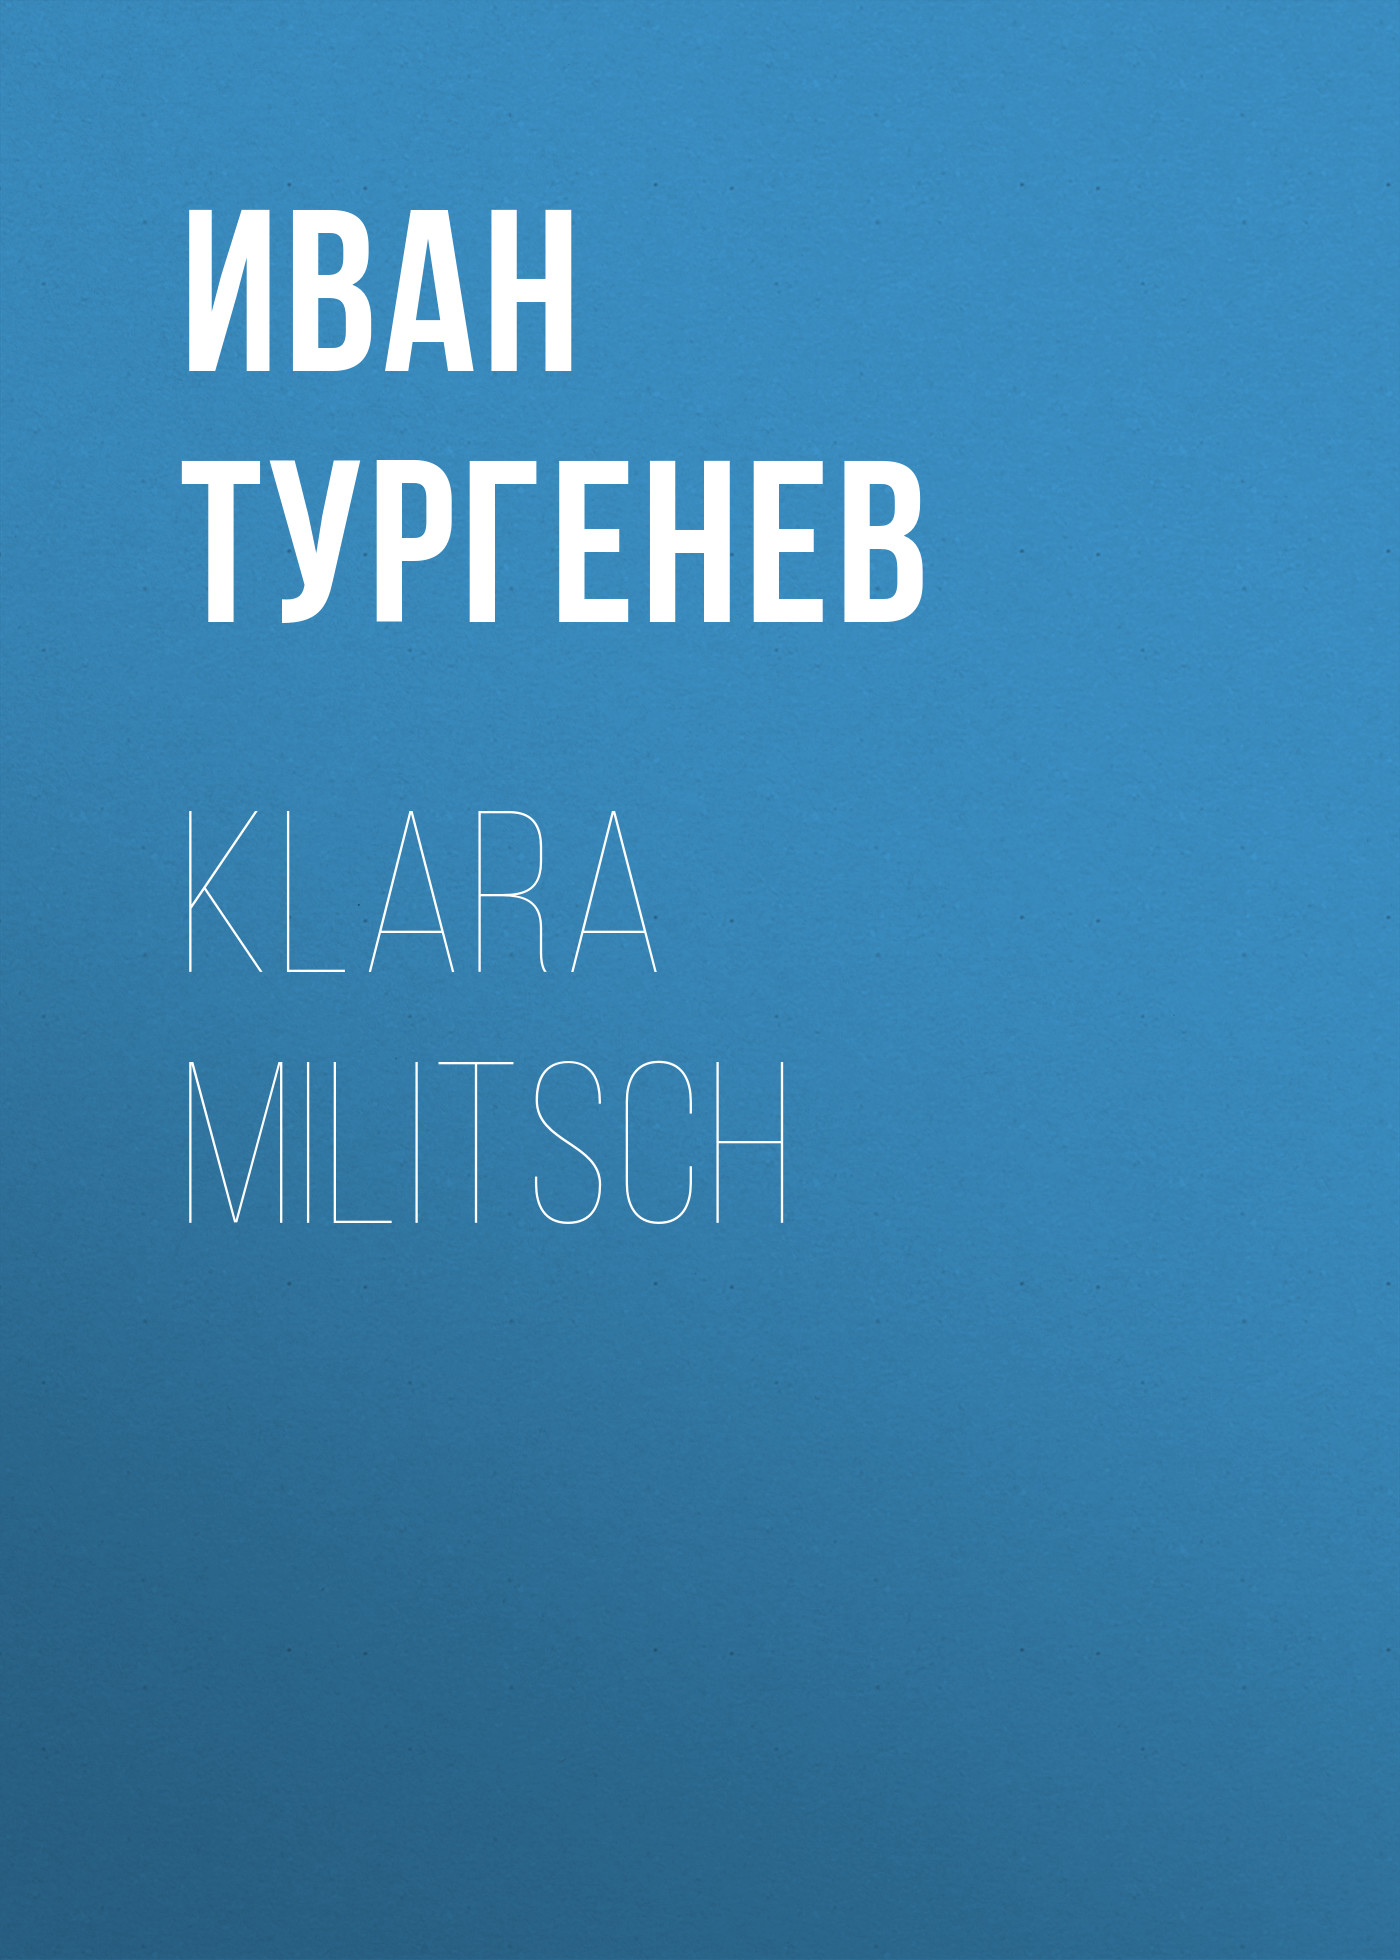 Книга Klara Militsch из серии , созданная Iwan Turgenew, может относится к жанру Русская классика. Стоимость электронной книги Klara Militsch с идентификатором 48631820 составляет 0 руб.